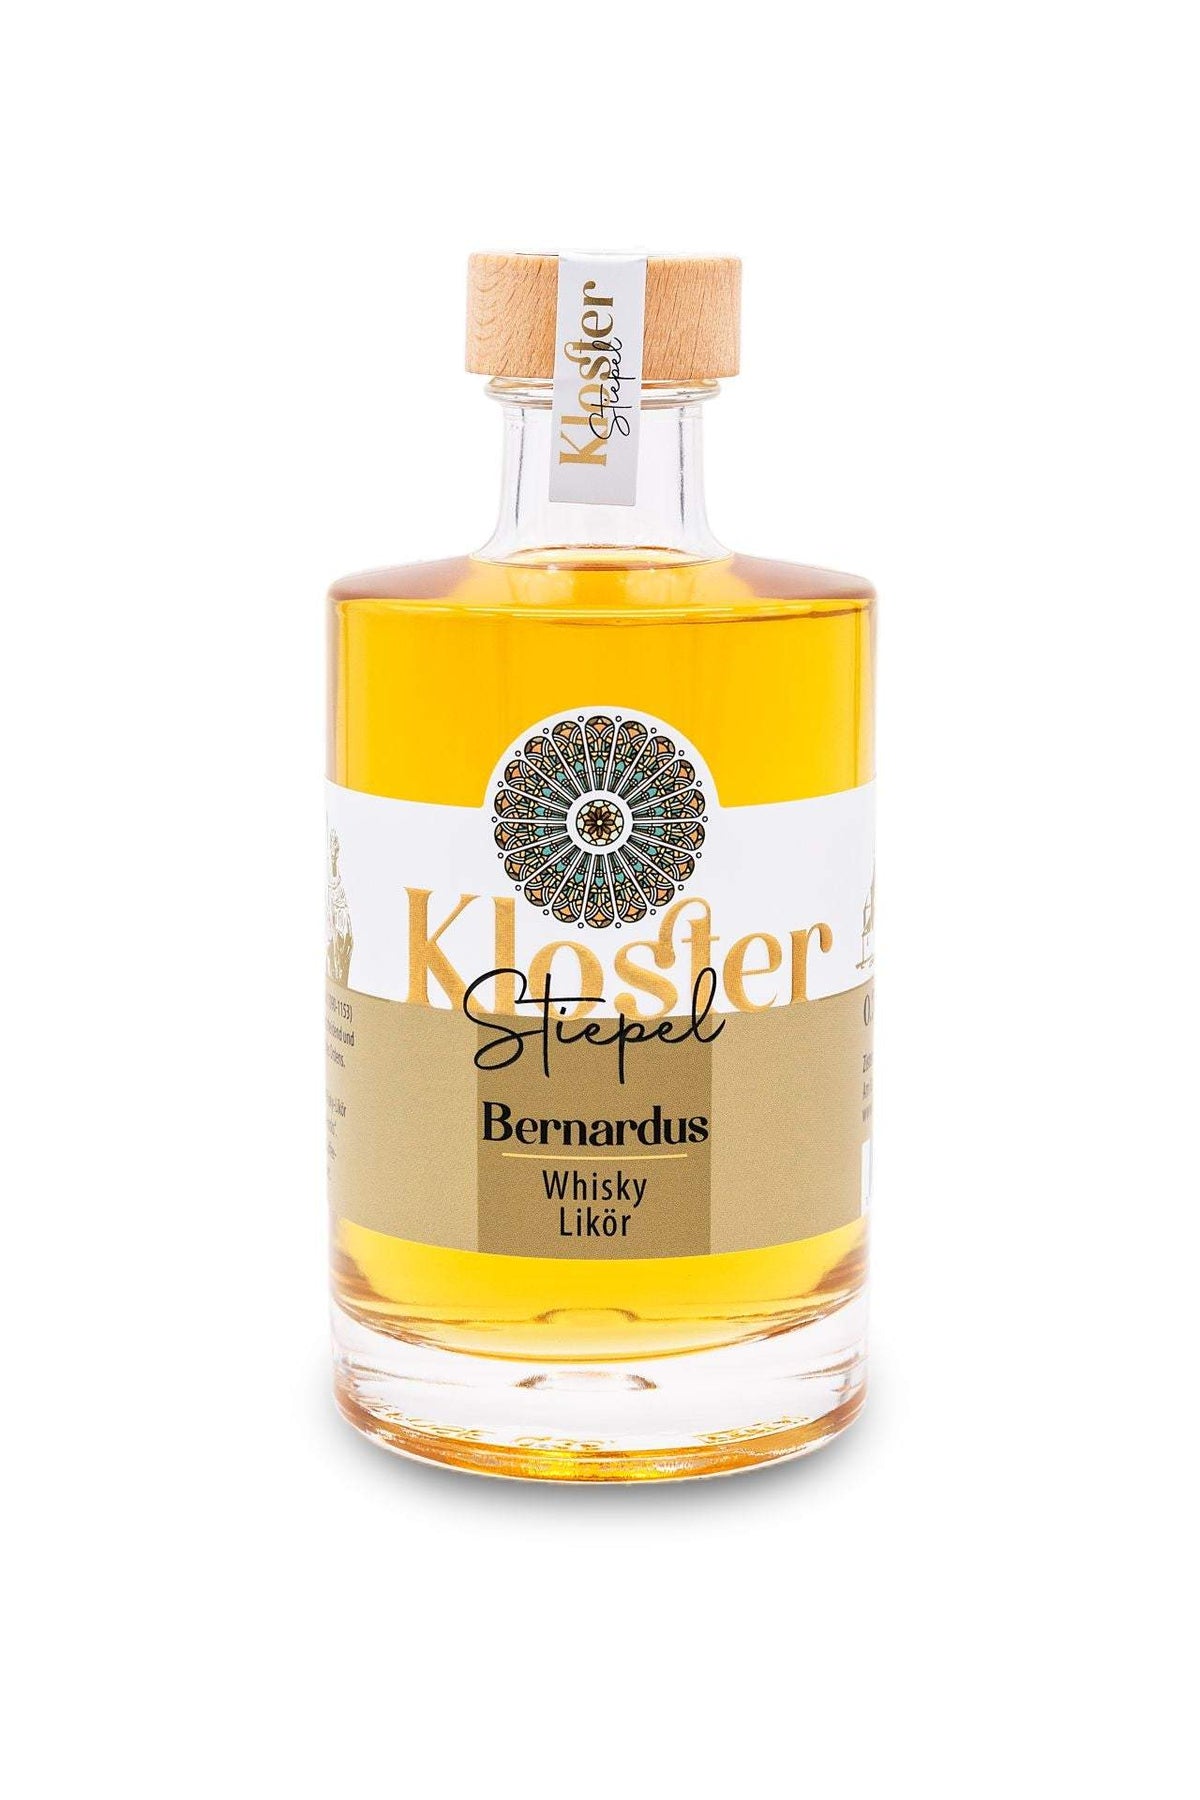 Bernardus - Whisky Likör-Klosterladenstiepel-Klosterliköre,Spirituosen